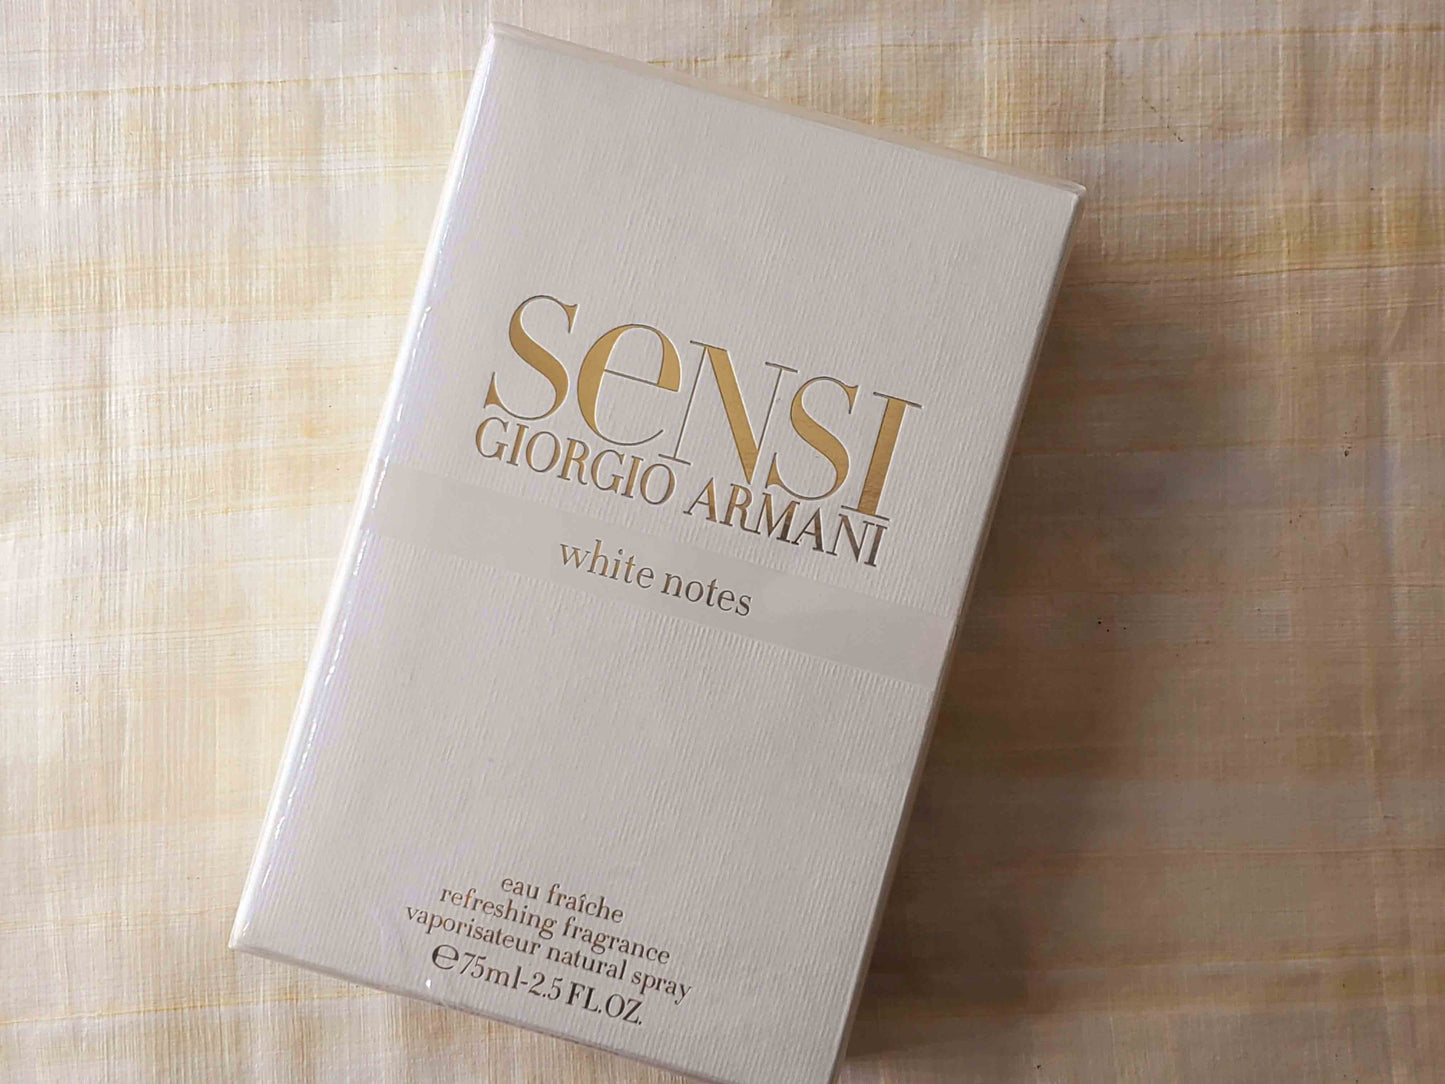 Sensi White Notes Giorgio Armani for women Eau Fraiche 75 ml 2.5 oz, Vintage, Rare, Sealed